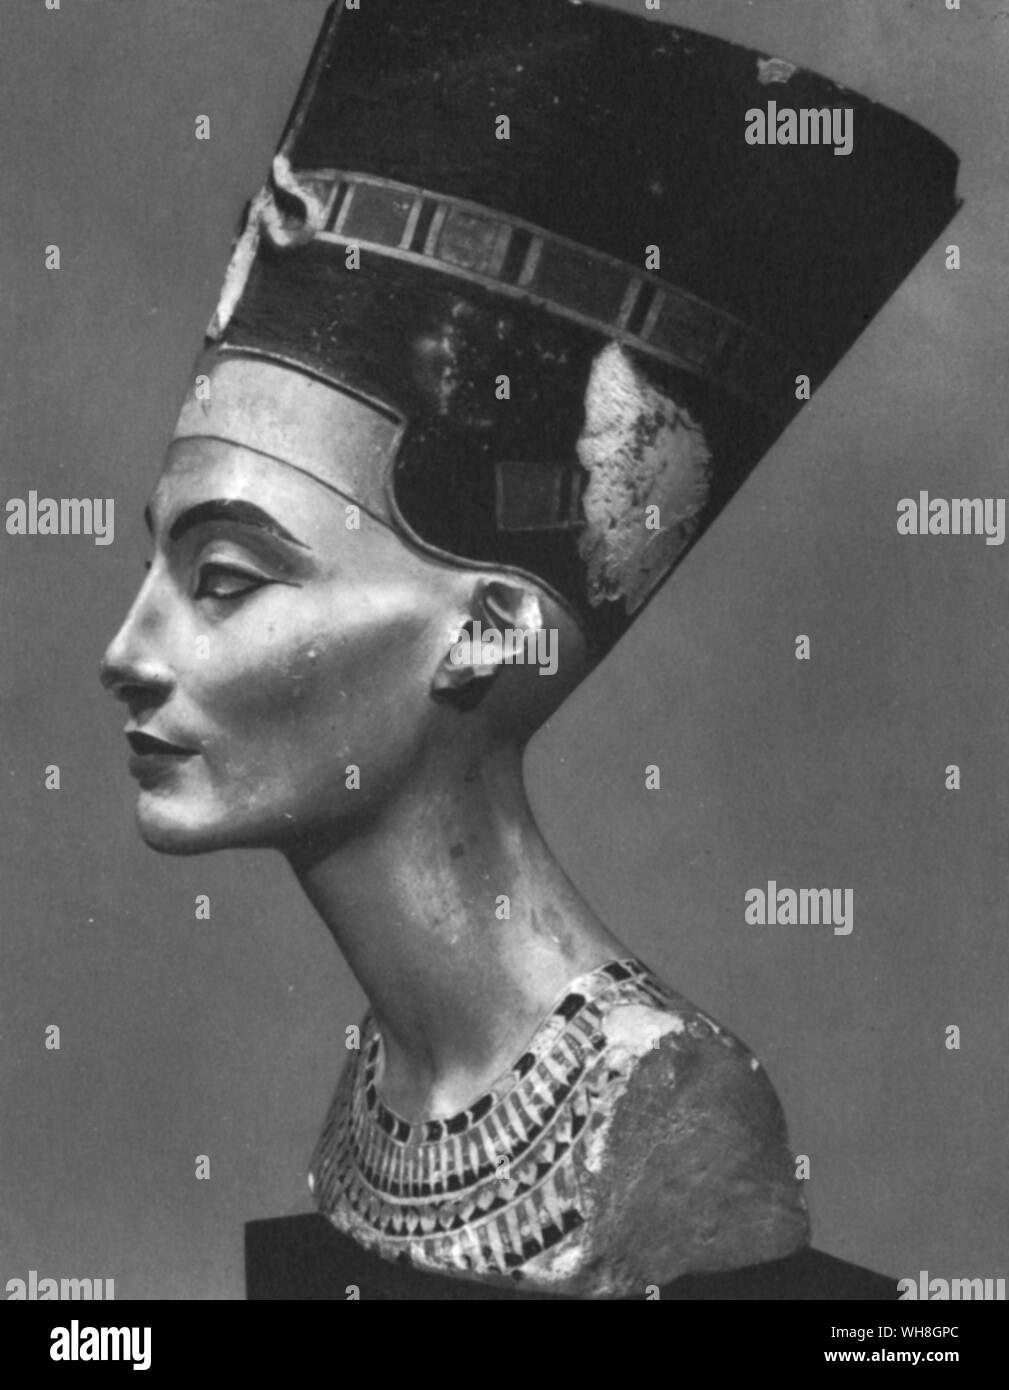 Büste der Königin Nofretete. Nofretete war die Frau des ägyptischen Pharao Amenophis IV (echnaton) und Schwiegermutter des Pharao Tutanchamun. Ihr Name übersetzt ungefähr um die Schöne ist gekommen. Diese Büste ist eines der am meisten kopierten Werke des alten Ägypten. Es war auf den Bildhauer Djhutmose zugeschrieben, und wurde in seiner Werkstatt gefunden. Die Schätze von Tutanchamun. Von Christiane Desroches Noblecourt, Seite 105 Tutanchamun.. Stockfoto